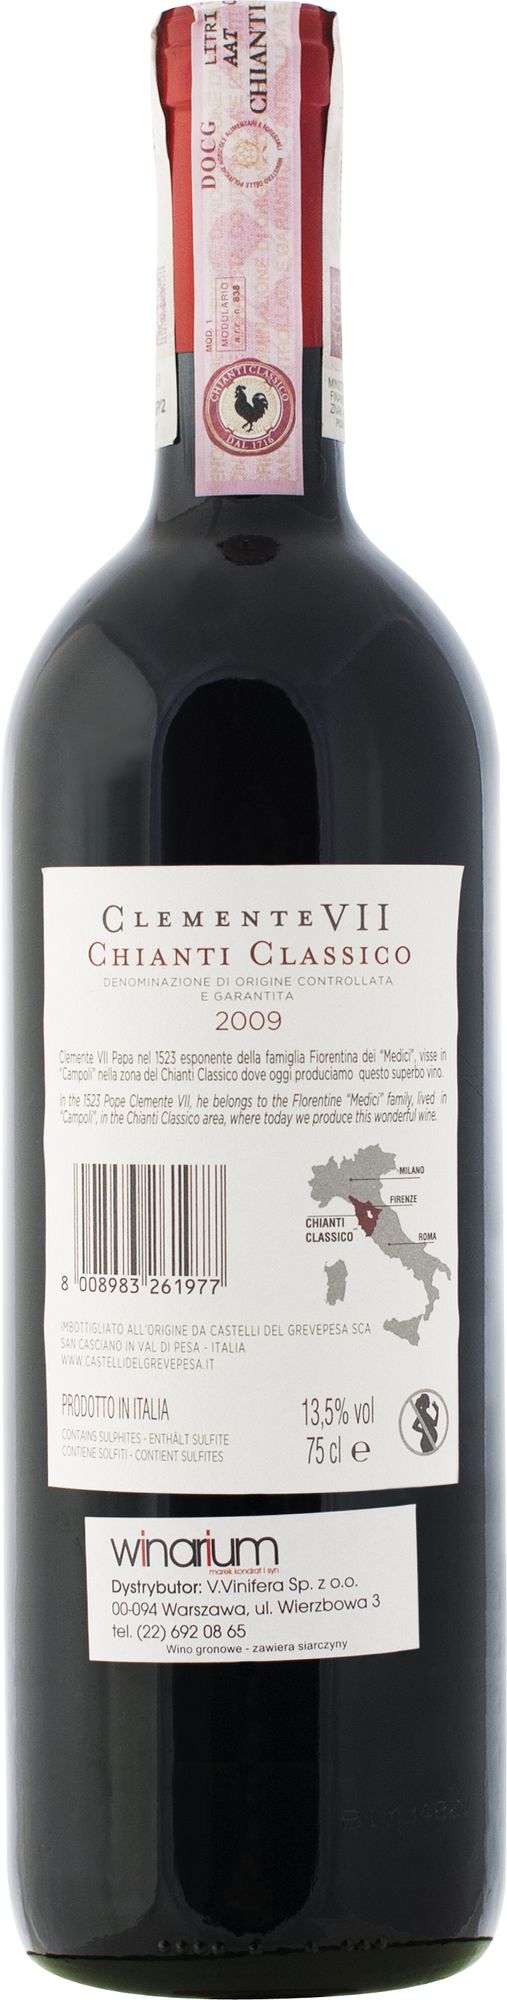 Wino Clemente VII Chianti Classico DOCG